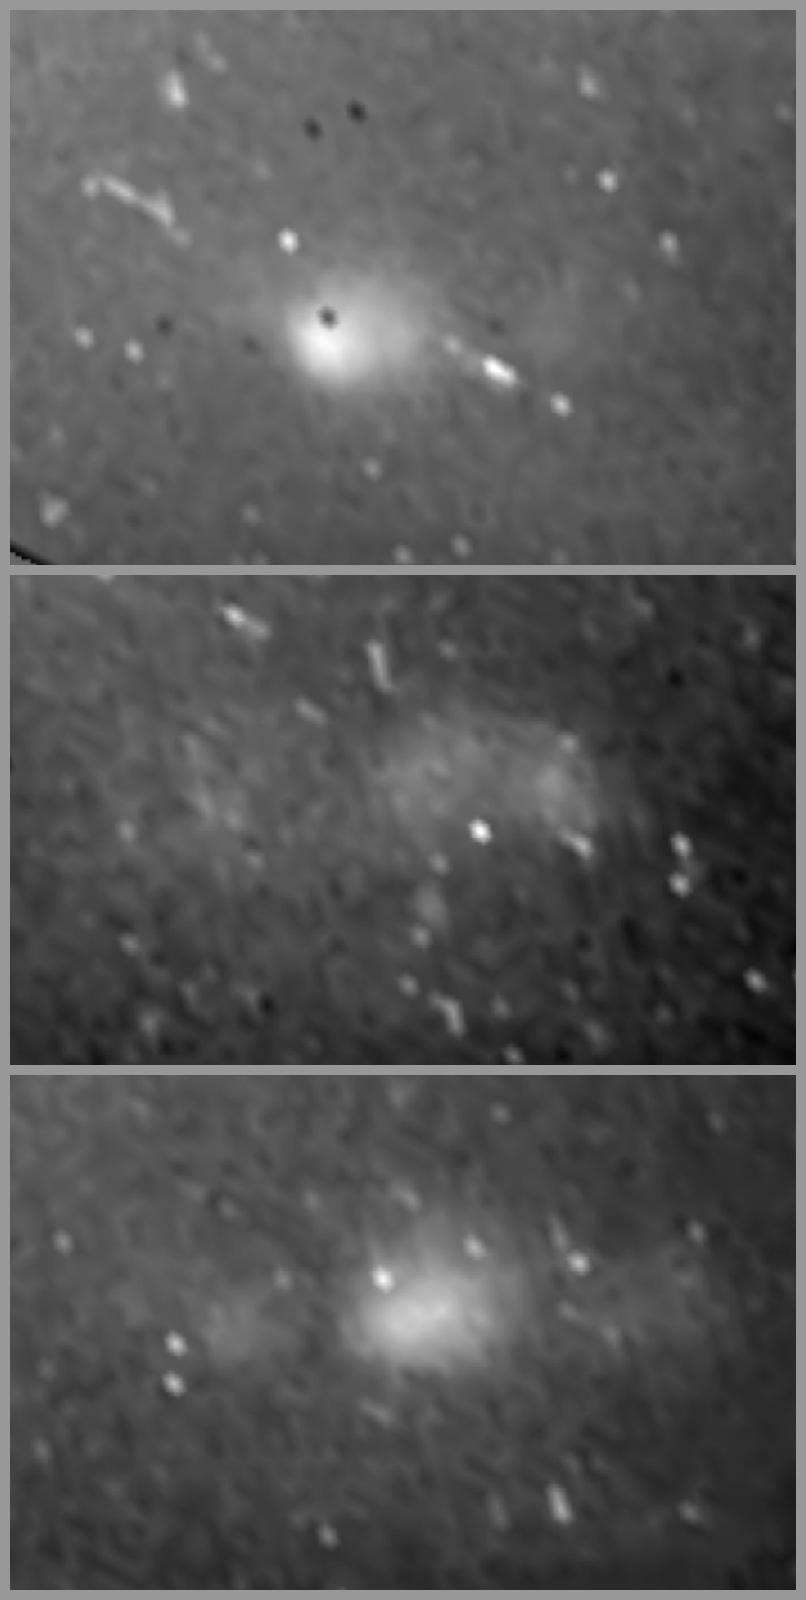 Ces trois images prises par la sonde Cassini alors qu'elle se trouvait à un peu plus de deux millions de kilomètres de Saturne montrent le flash lumineux d'éclairs au cours d'un orage. Crédit Nasa/JPL-Caltech/Space Science Institute